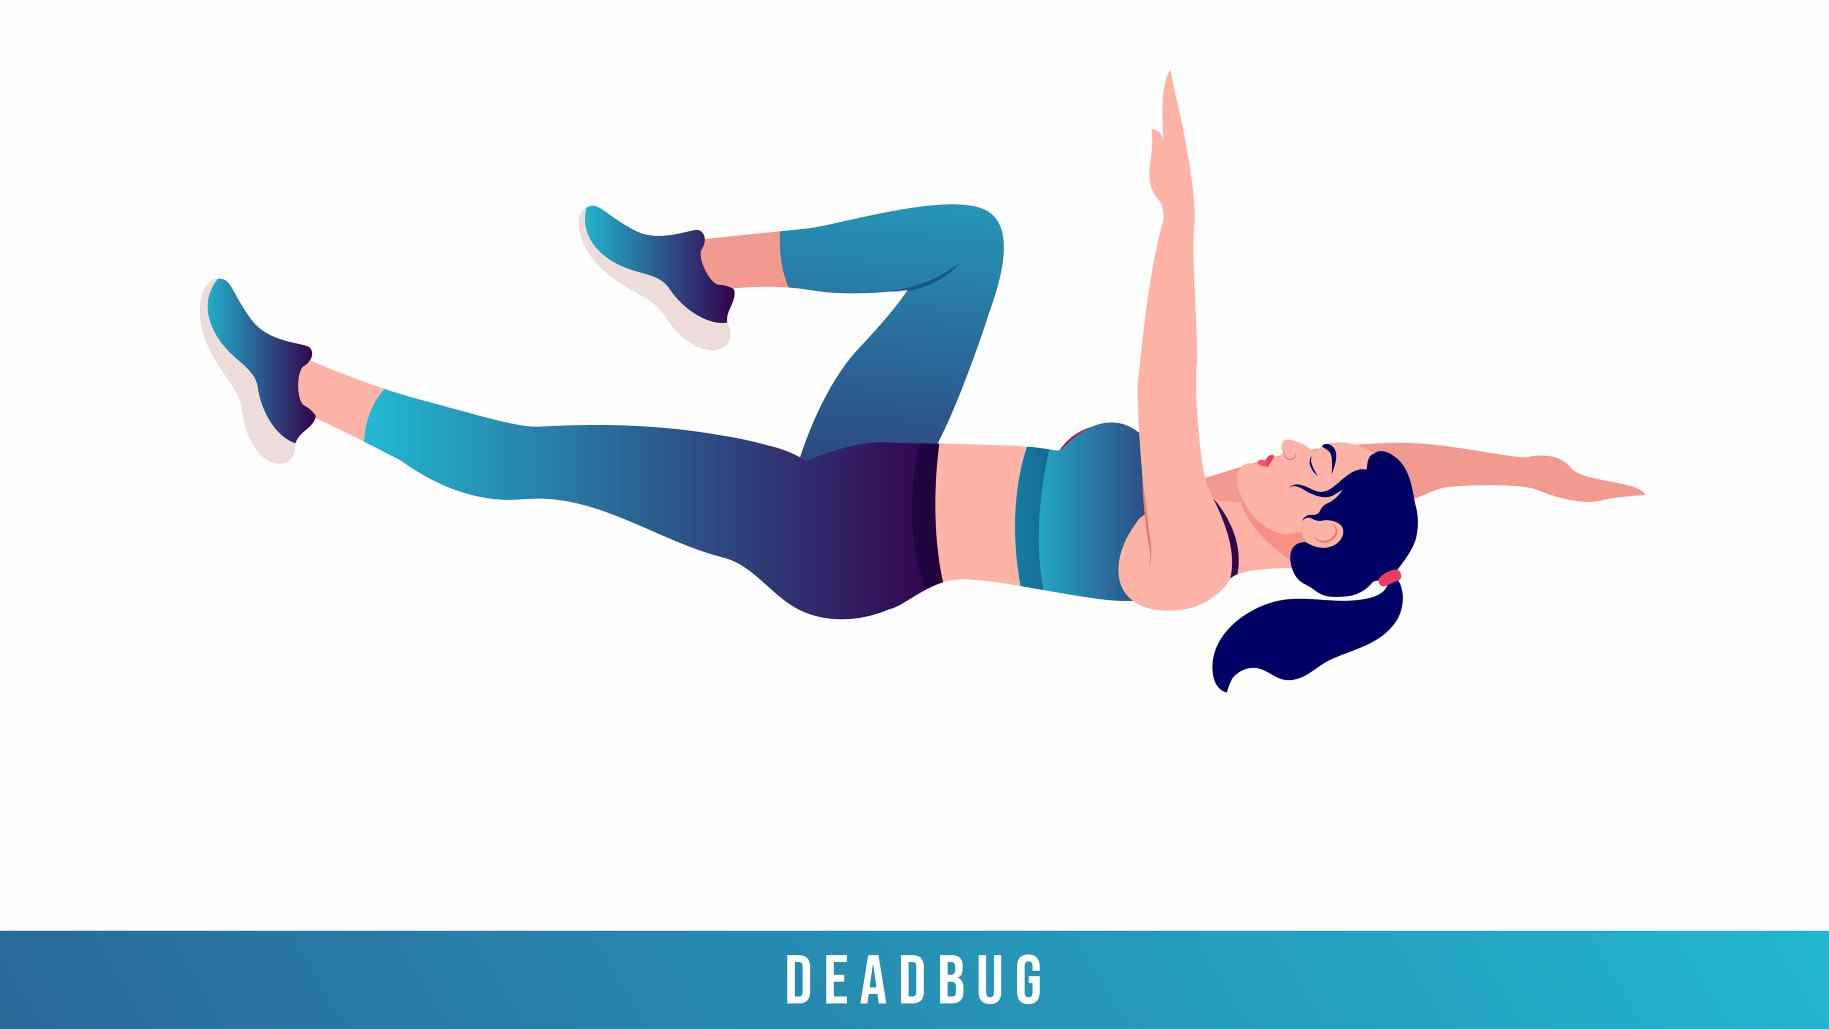 Personne exécutant un deadbug sur le dos avec un bras et la jambe opposée tendus